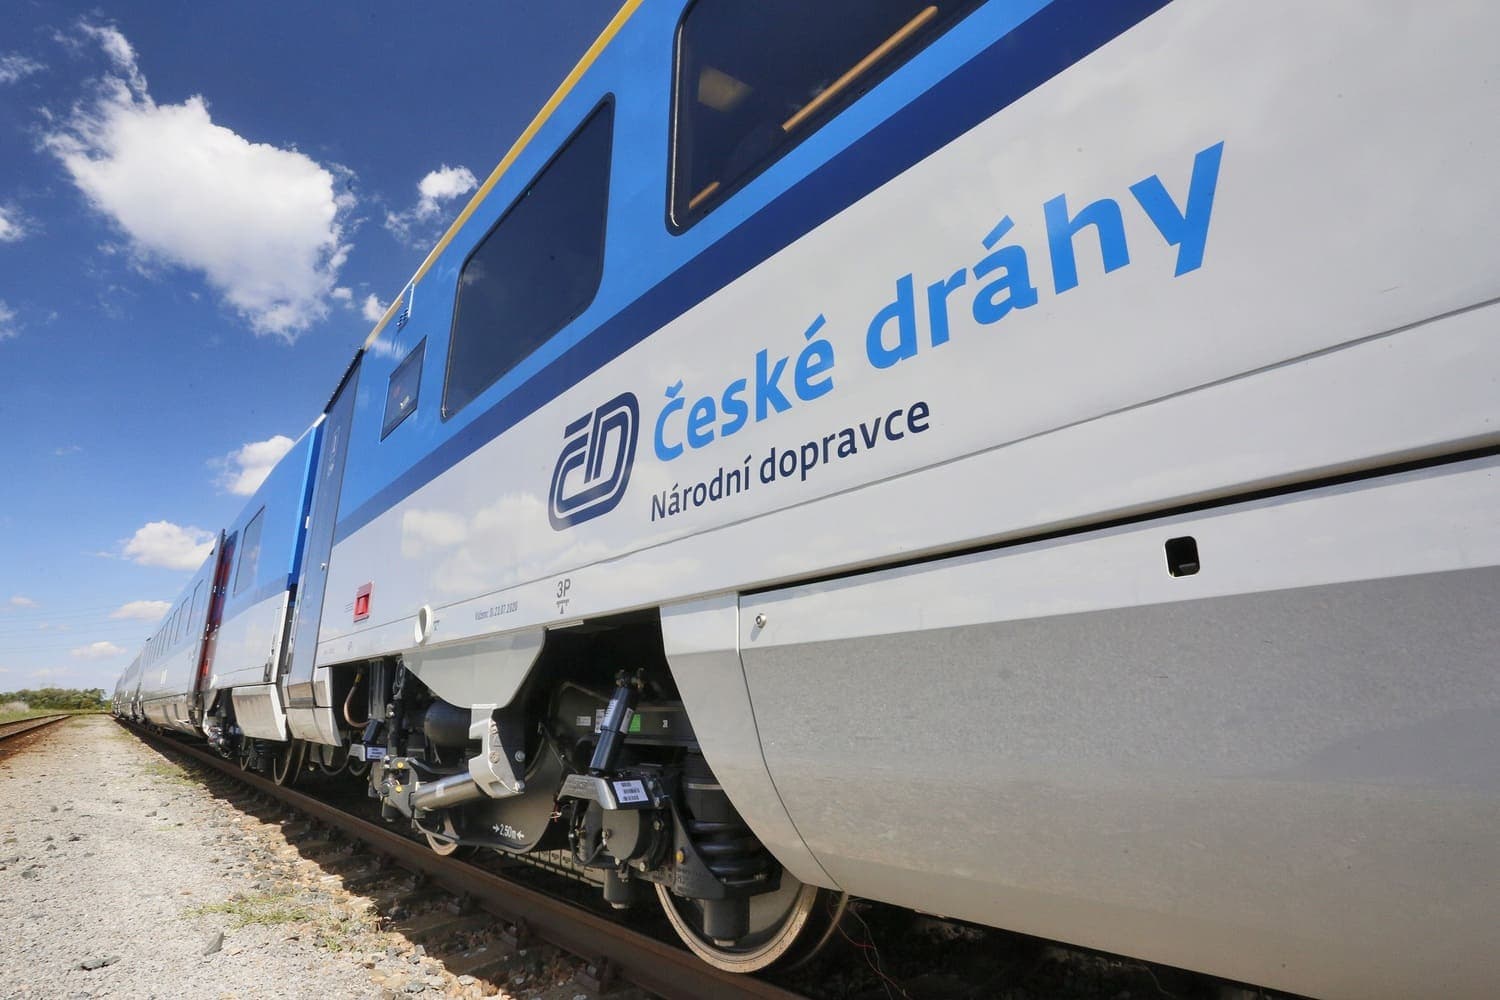 Компания České dráhy начала продавать билеты онлайн и на опаздывающие поезда